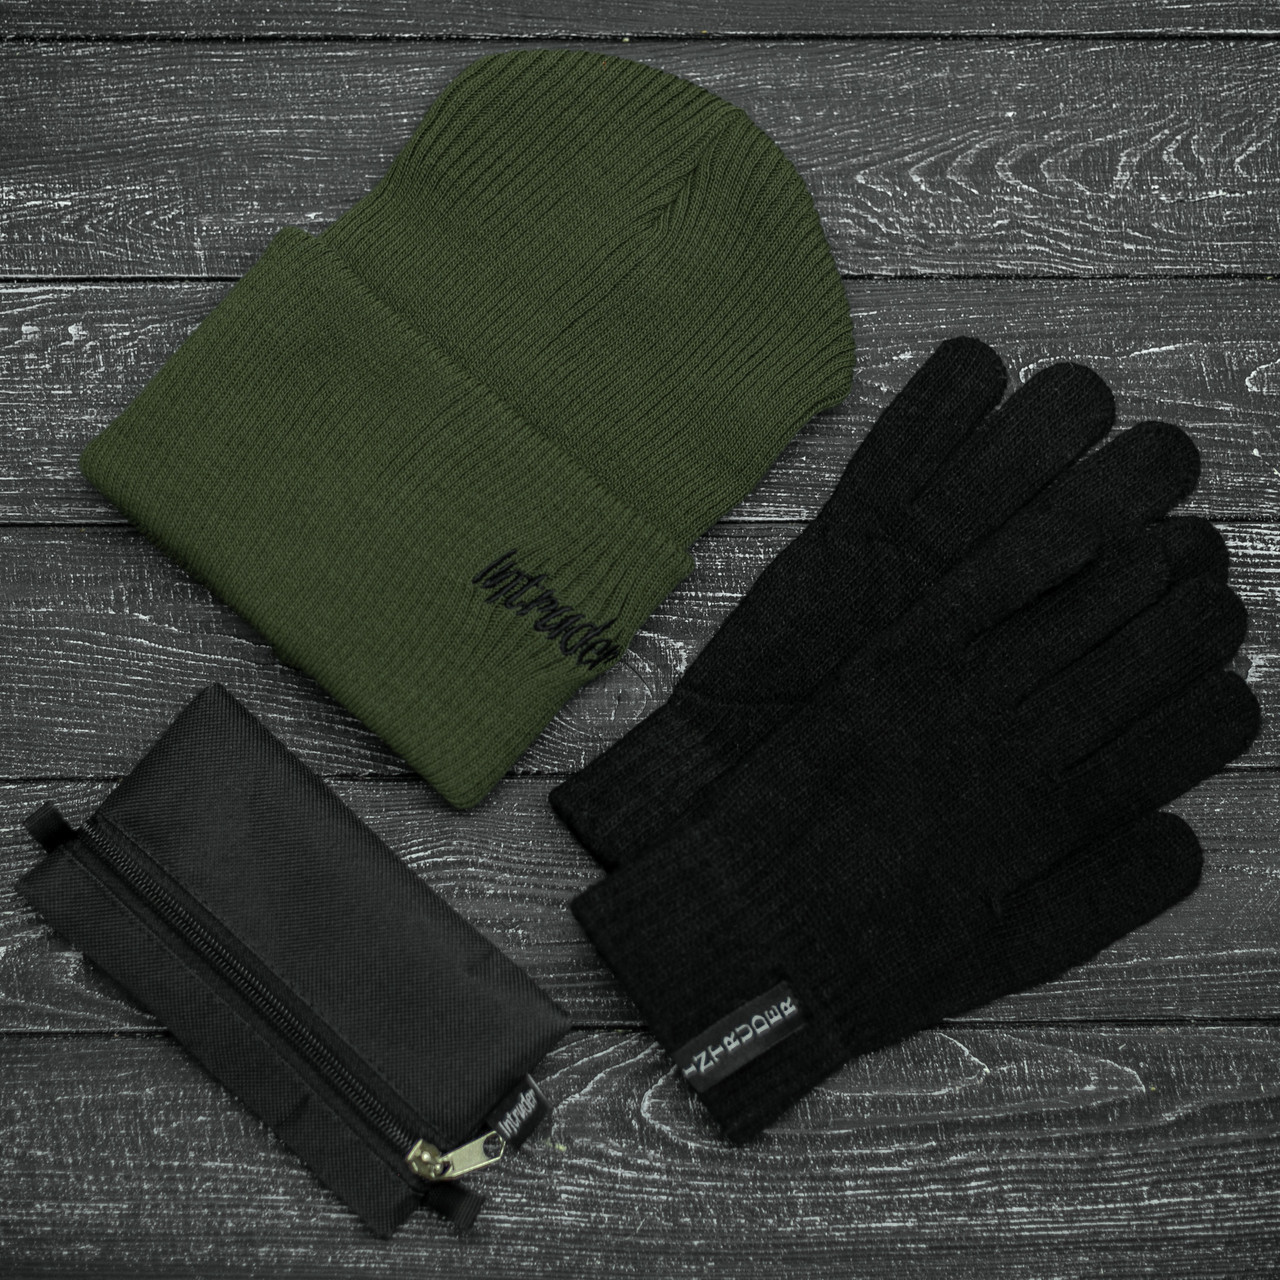 Шапка Мужская/ Женская Intruder зимняя small logo хаки и перчатки черные, зимний комплект